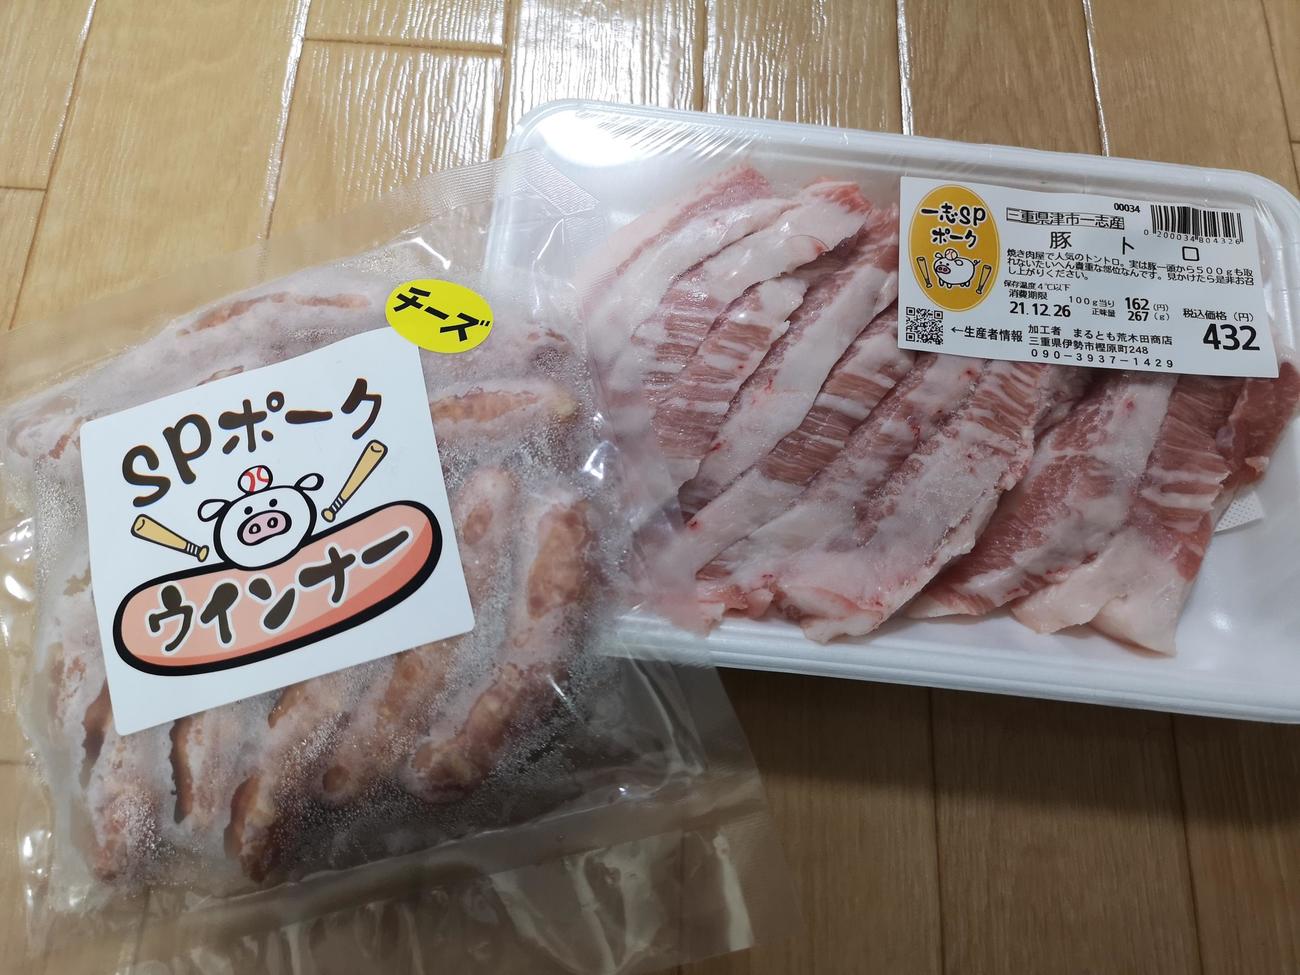 元ソフトバンク江川智晃氏が切ってパック詰めした「豚トロ」と自家製の「SPポークウインナー」